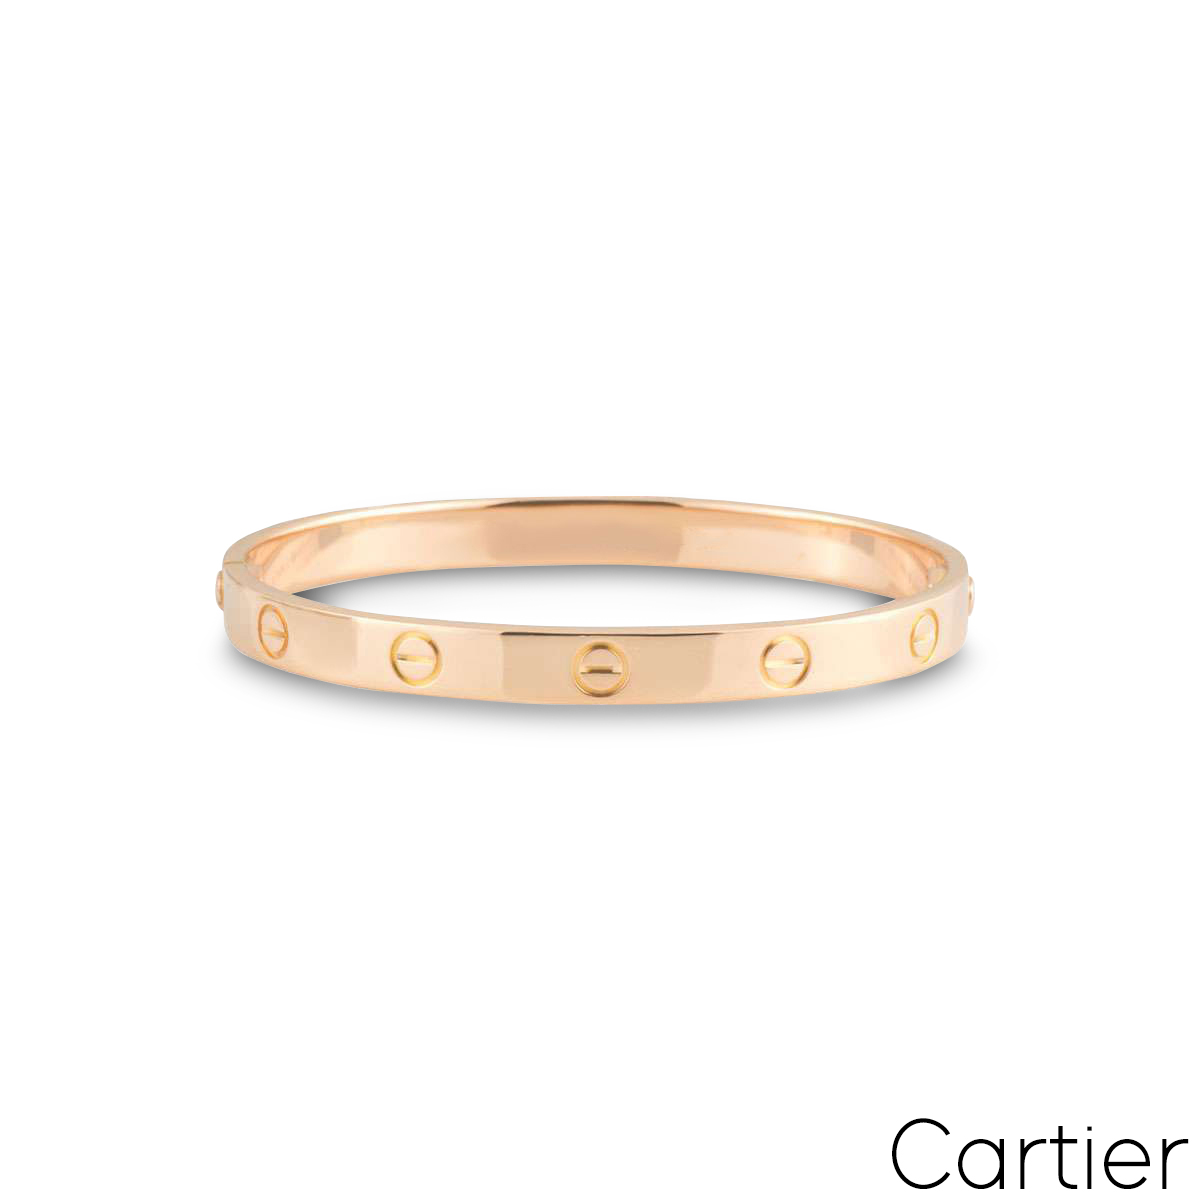 Cartier Rose Gold Plain Love Bracelet Size 16 B6035616